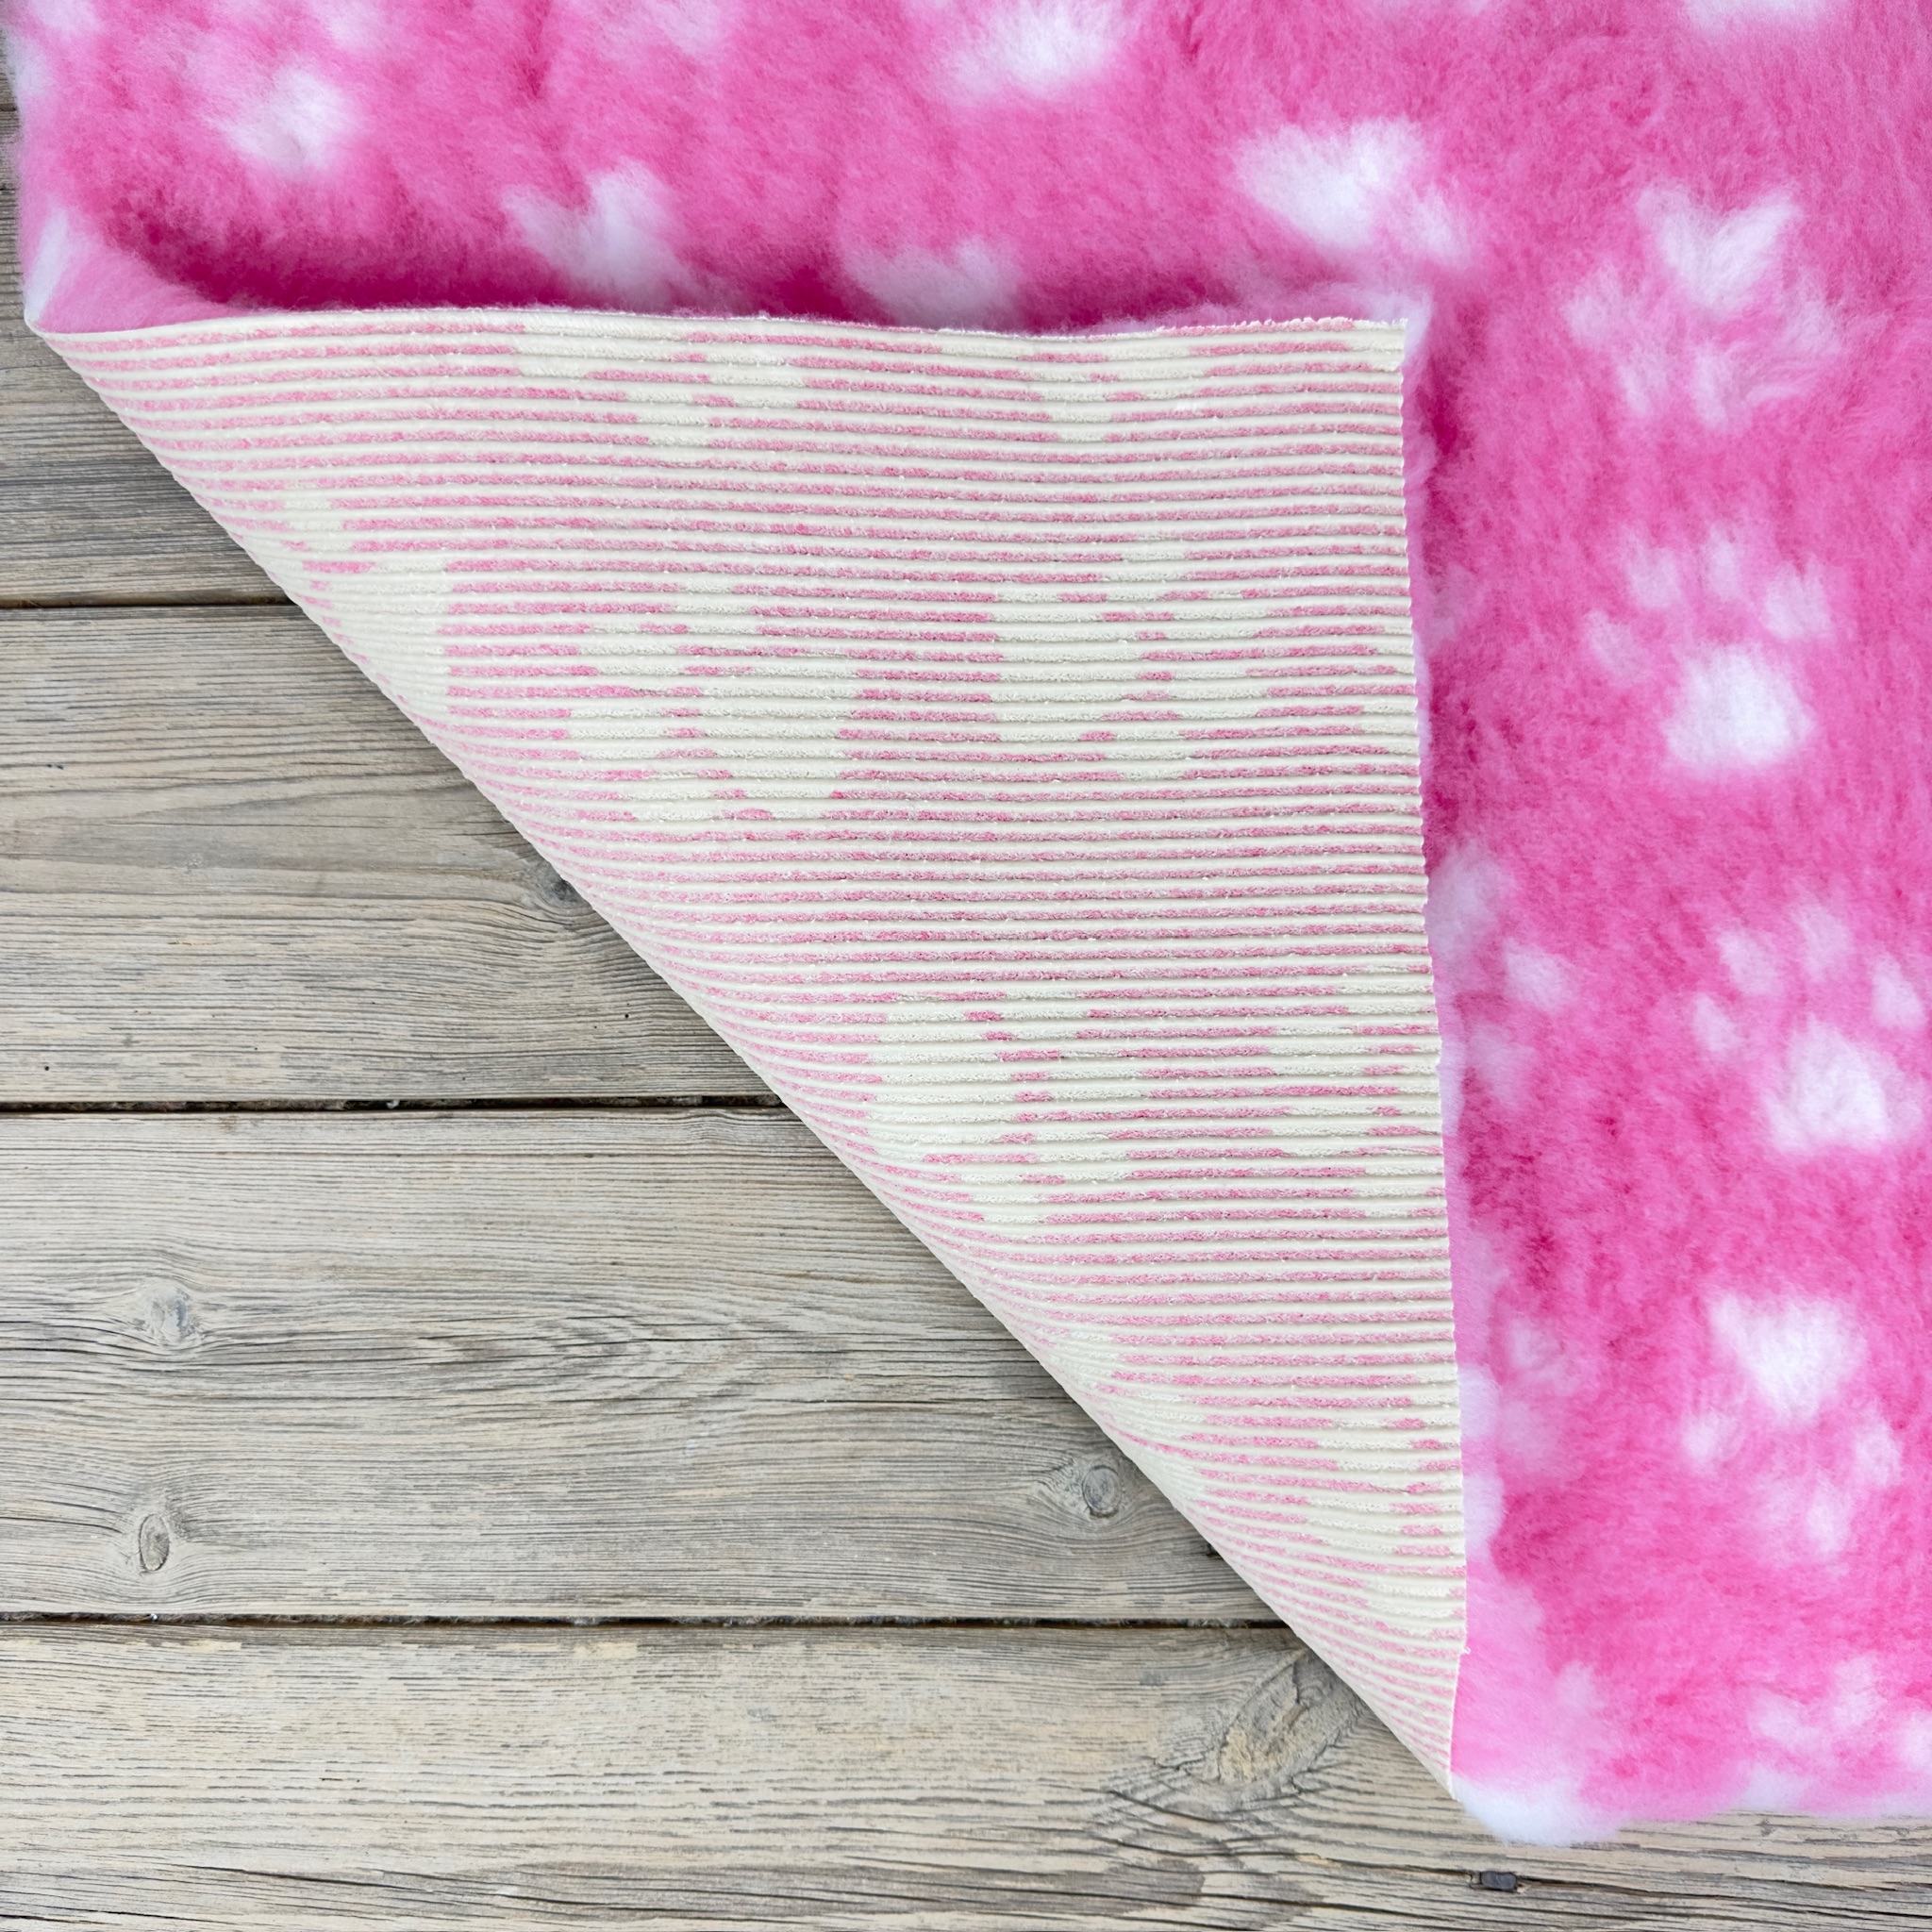 Pink White Paws high grade Vet Bedding non-slip back bed fleece for pets